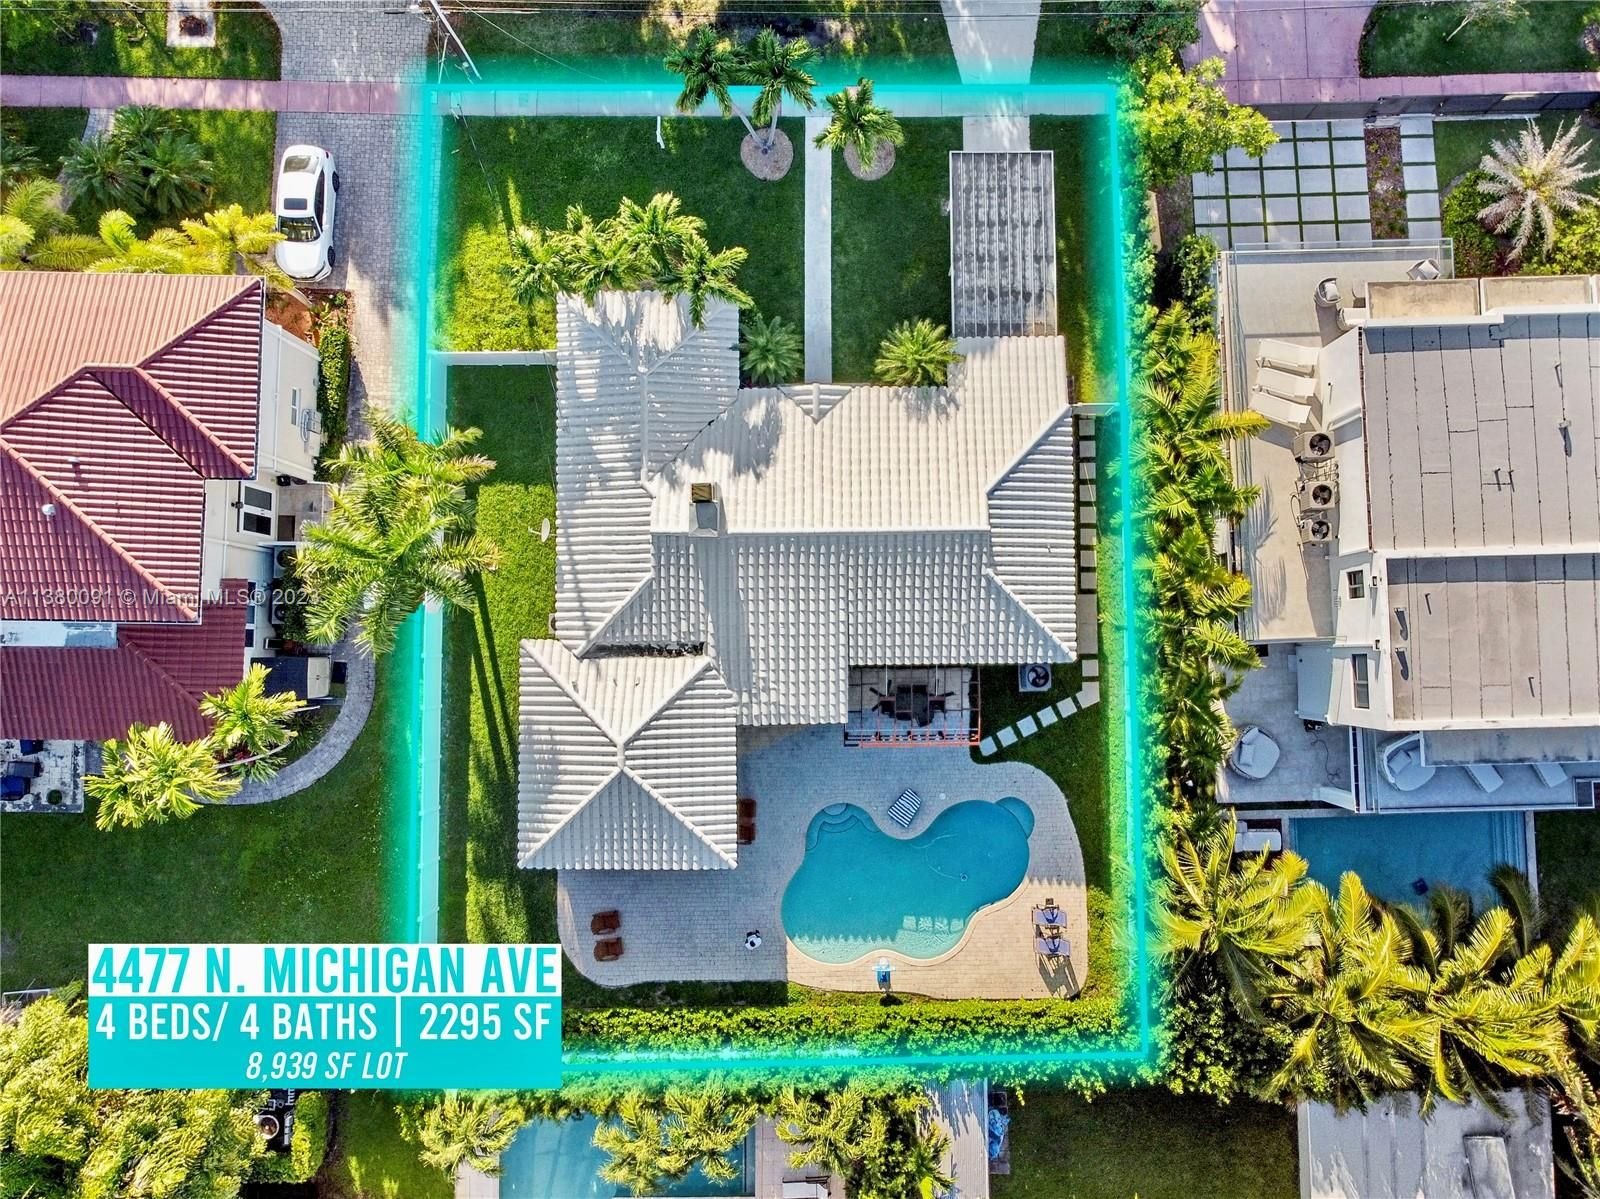 Real estate property located at 4477 Michigan Ave, Miami-Dade County, Miami Beach, FL